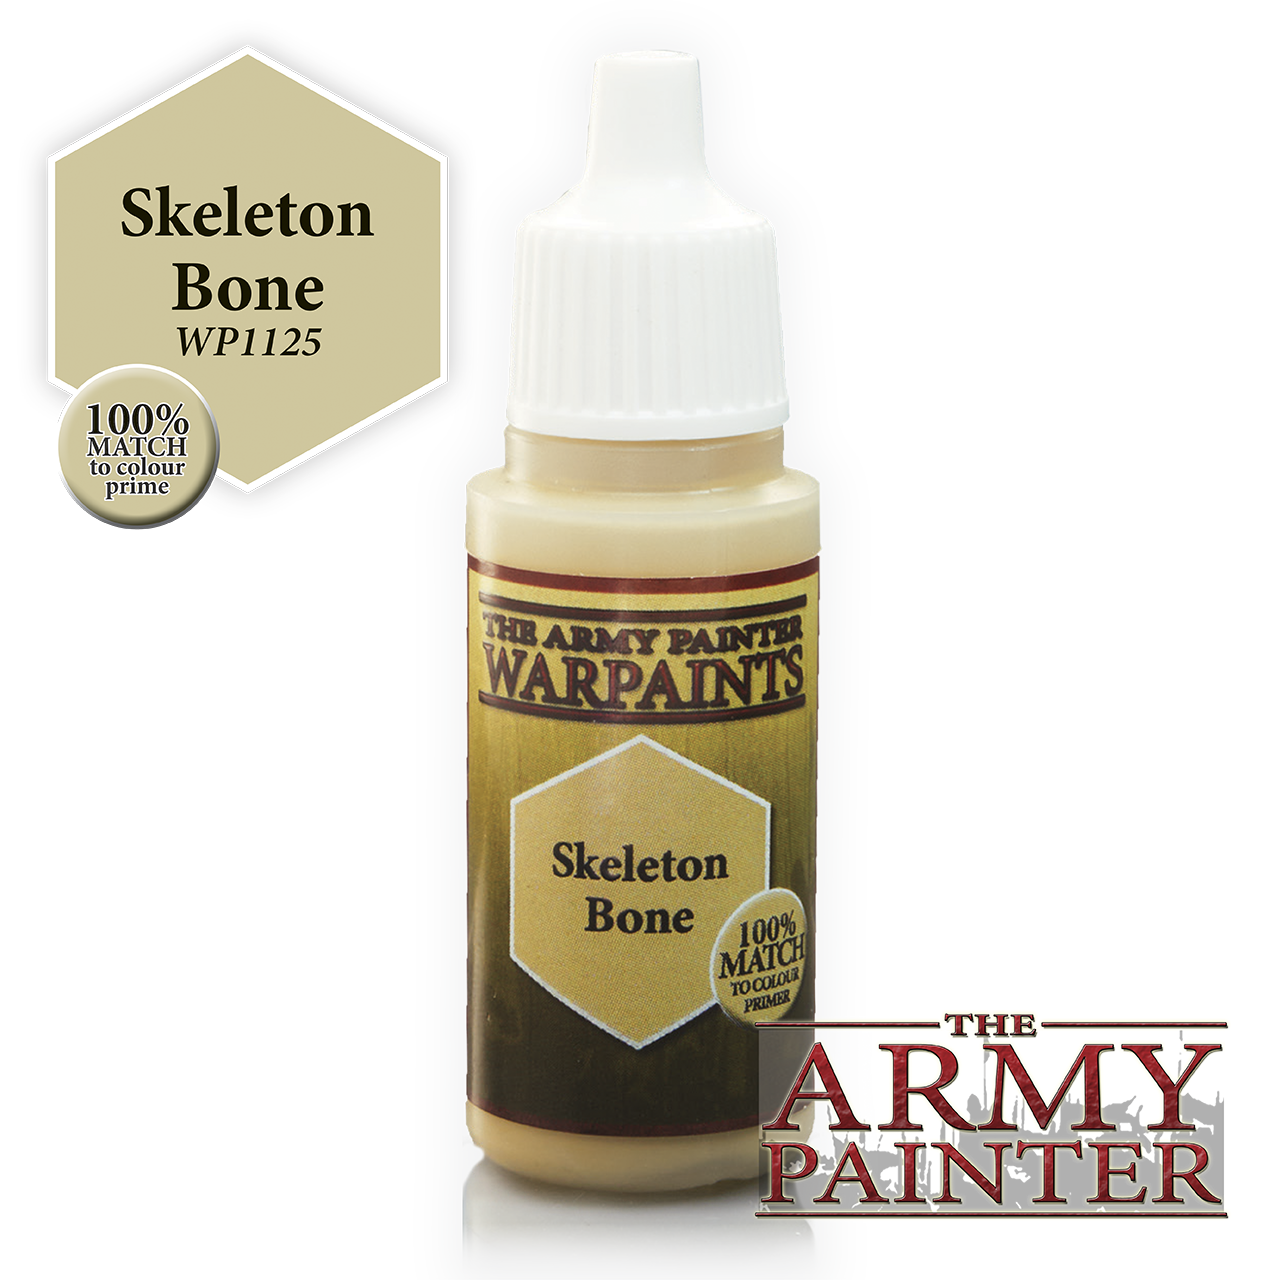 The Army Painter Warpaints: Skeleton Bone (18ml)